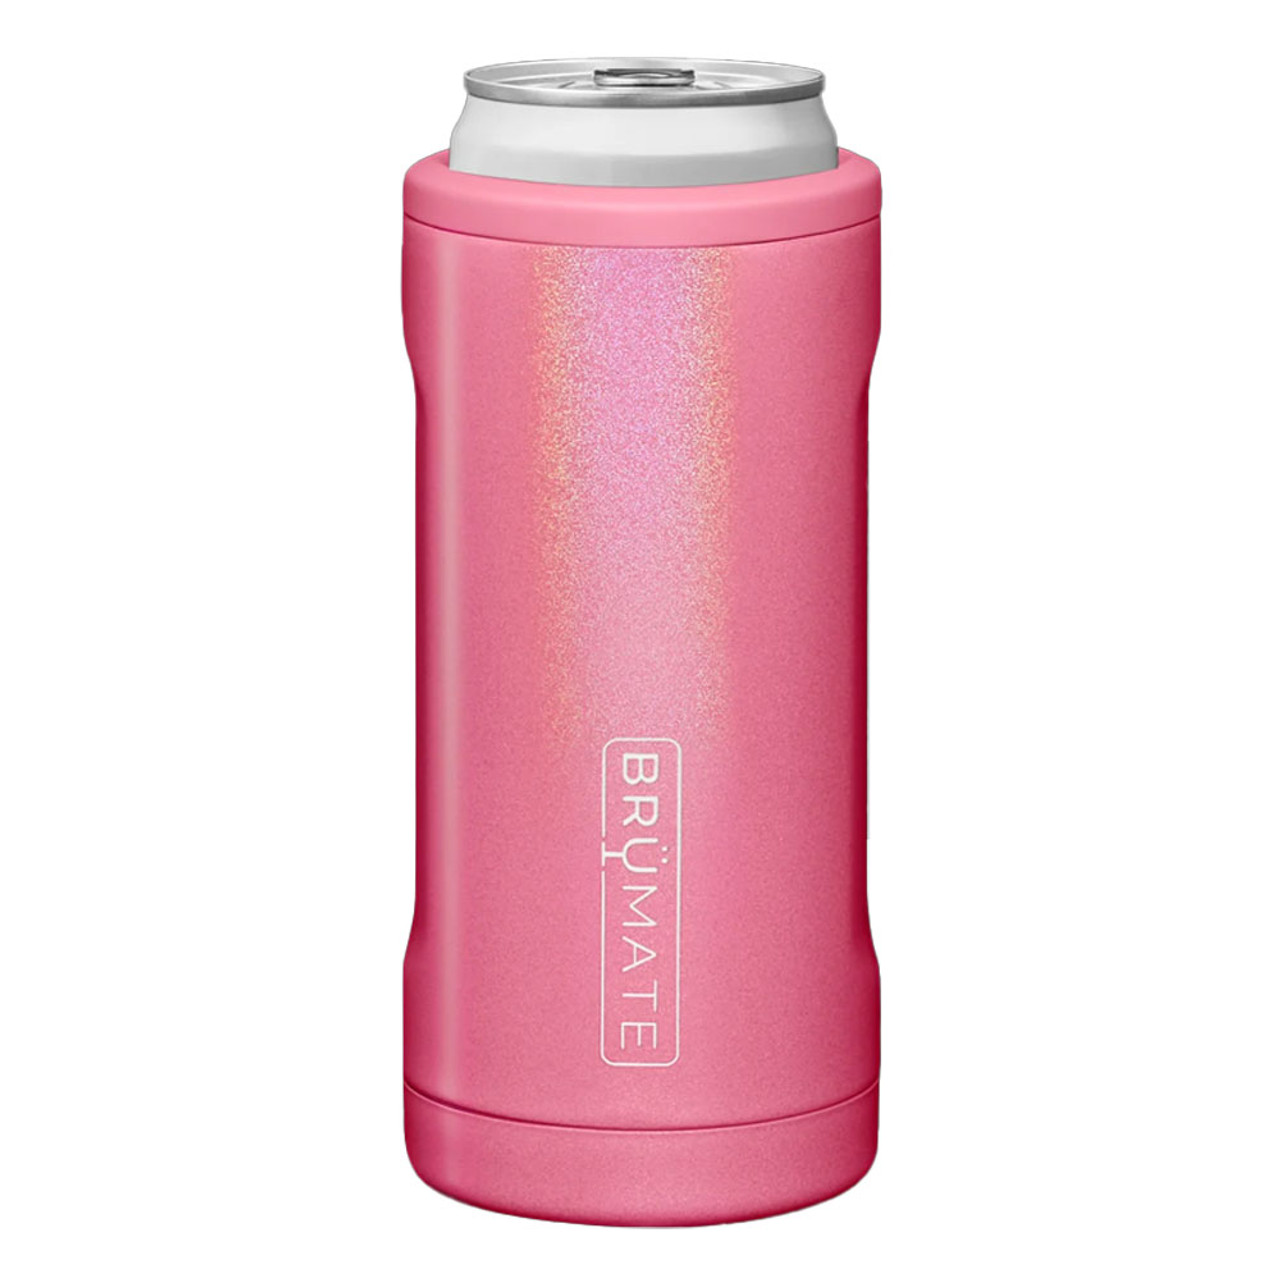 BruMate Hopsulator 12 oz Slim Can Cooler - Glitter Pink